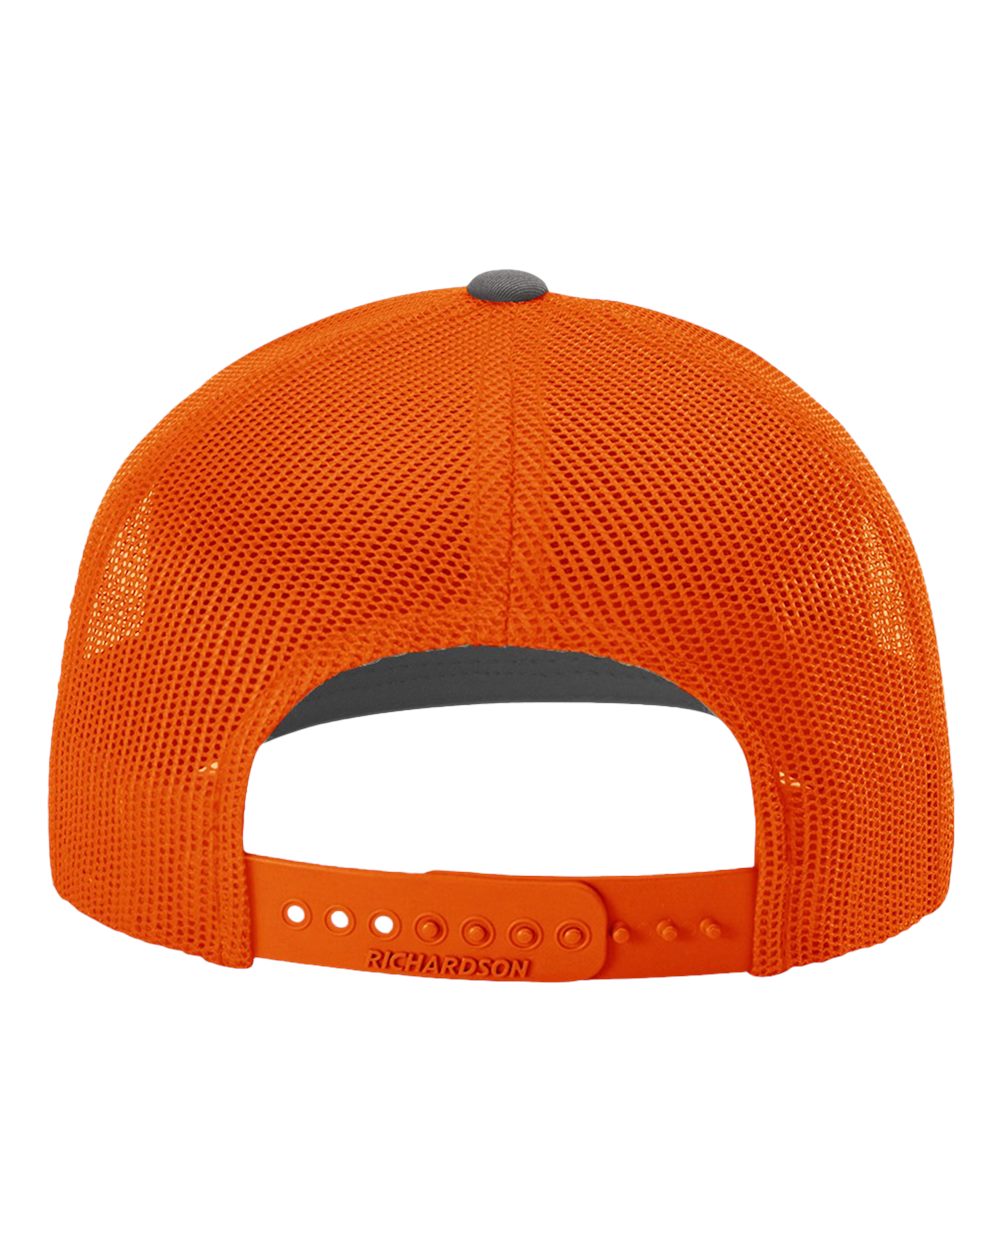 Richardson Adjustable Customized Snapback Trucker Caps, Charcoal Orange